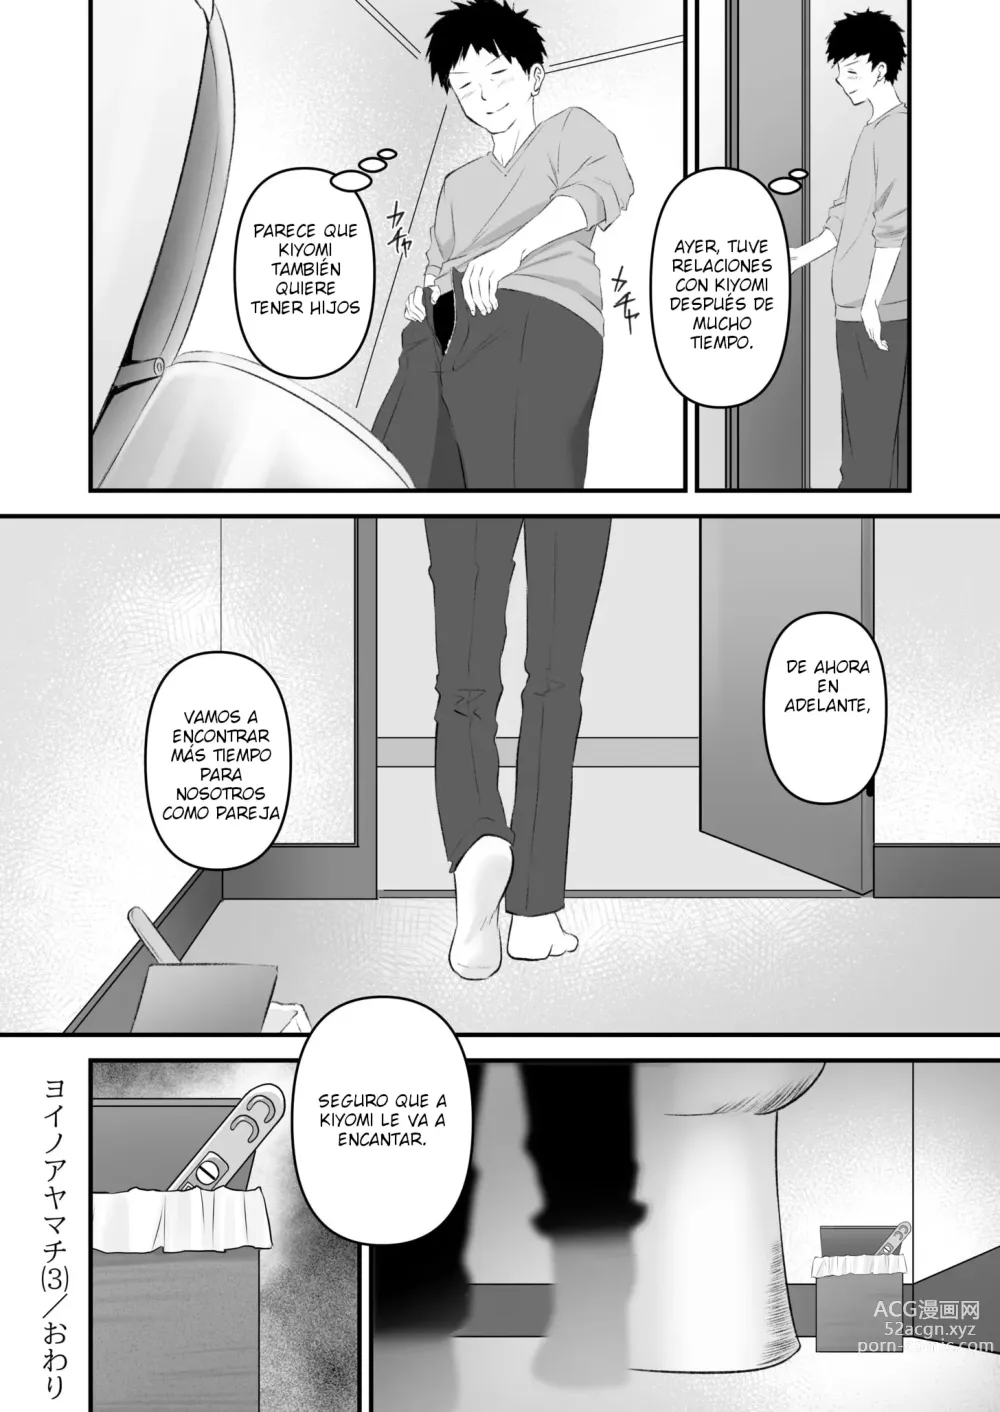 Page 26 of manga Yoi no ayamachi 03 - Final